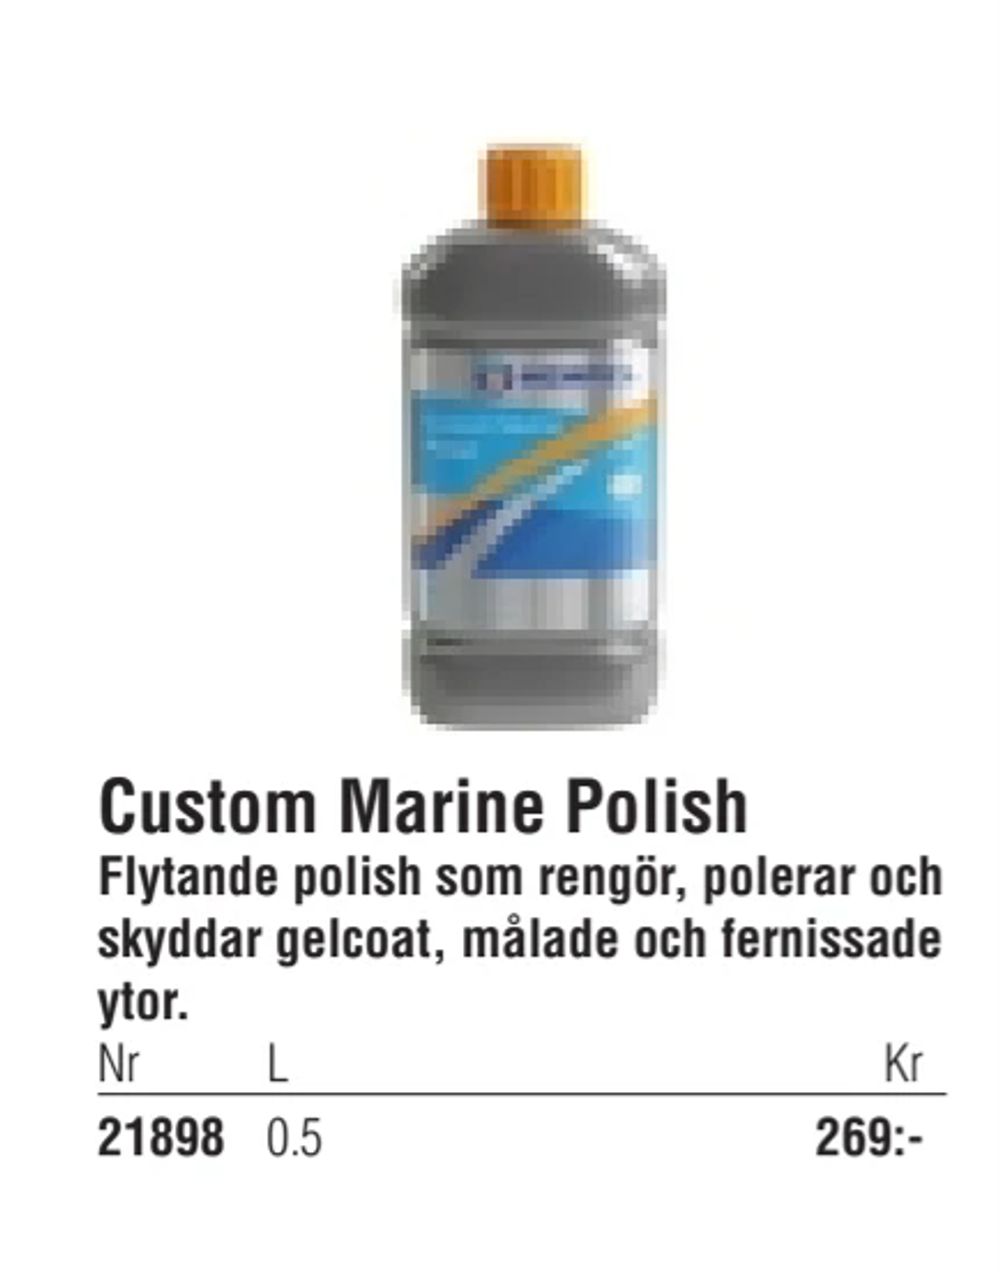 Erbjudanden på Custom Marine Polish från Erlandsons Brygga för 269 kr